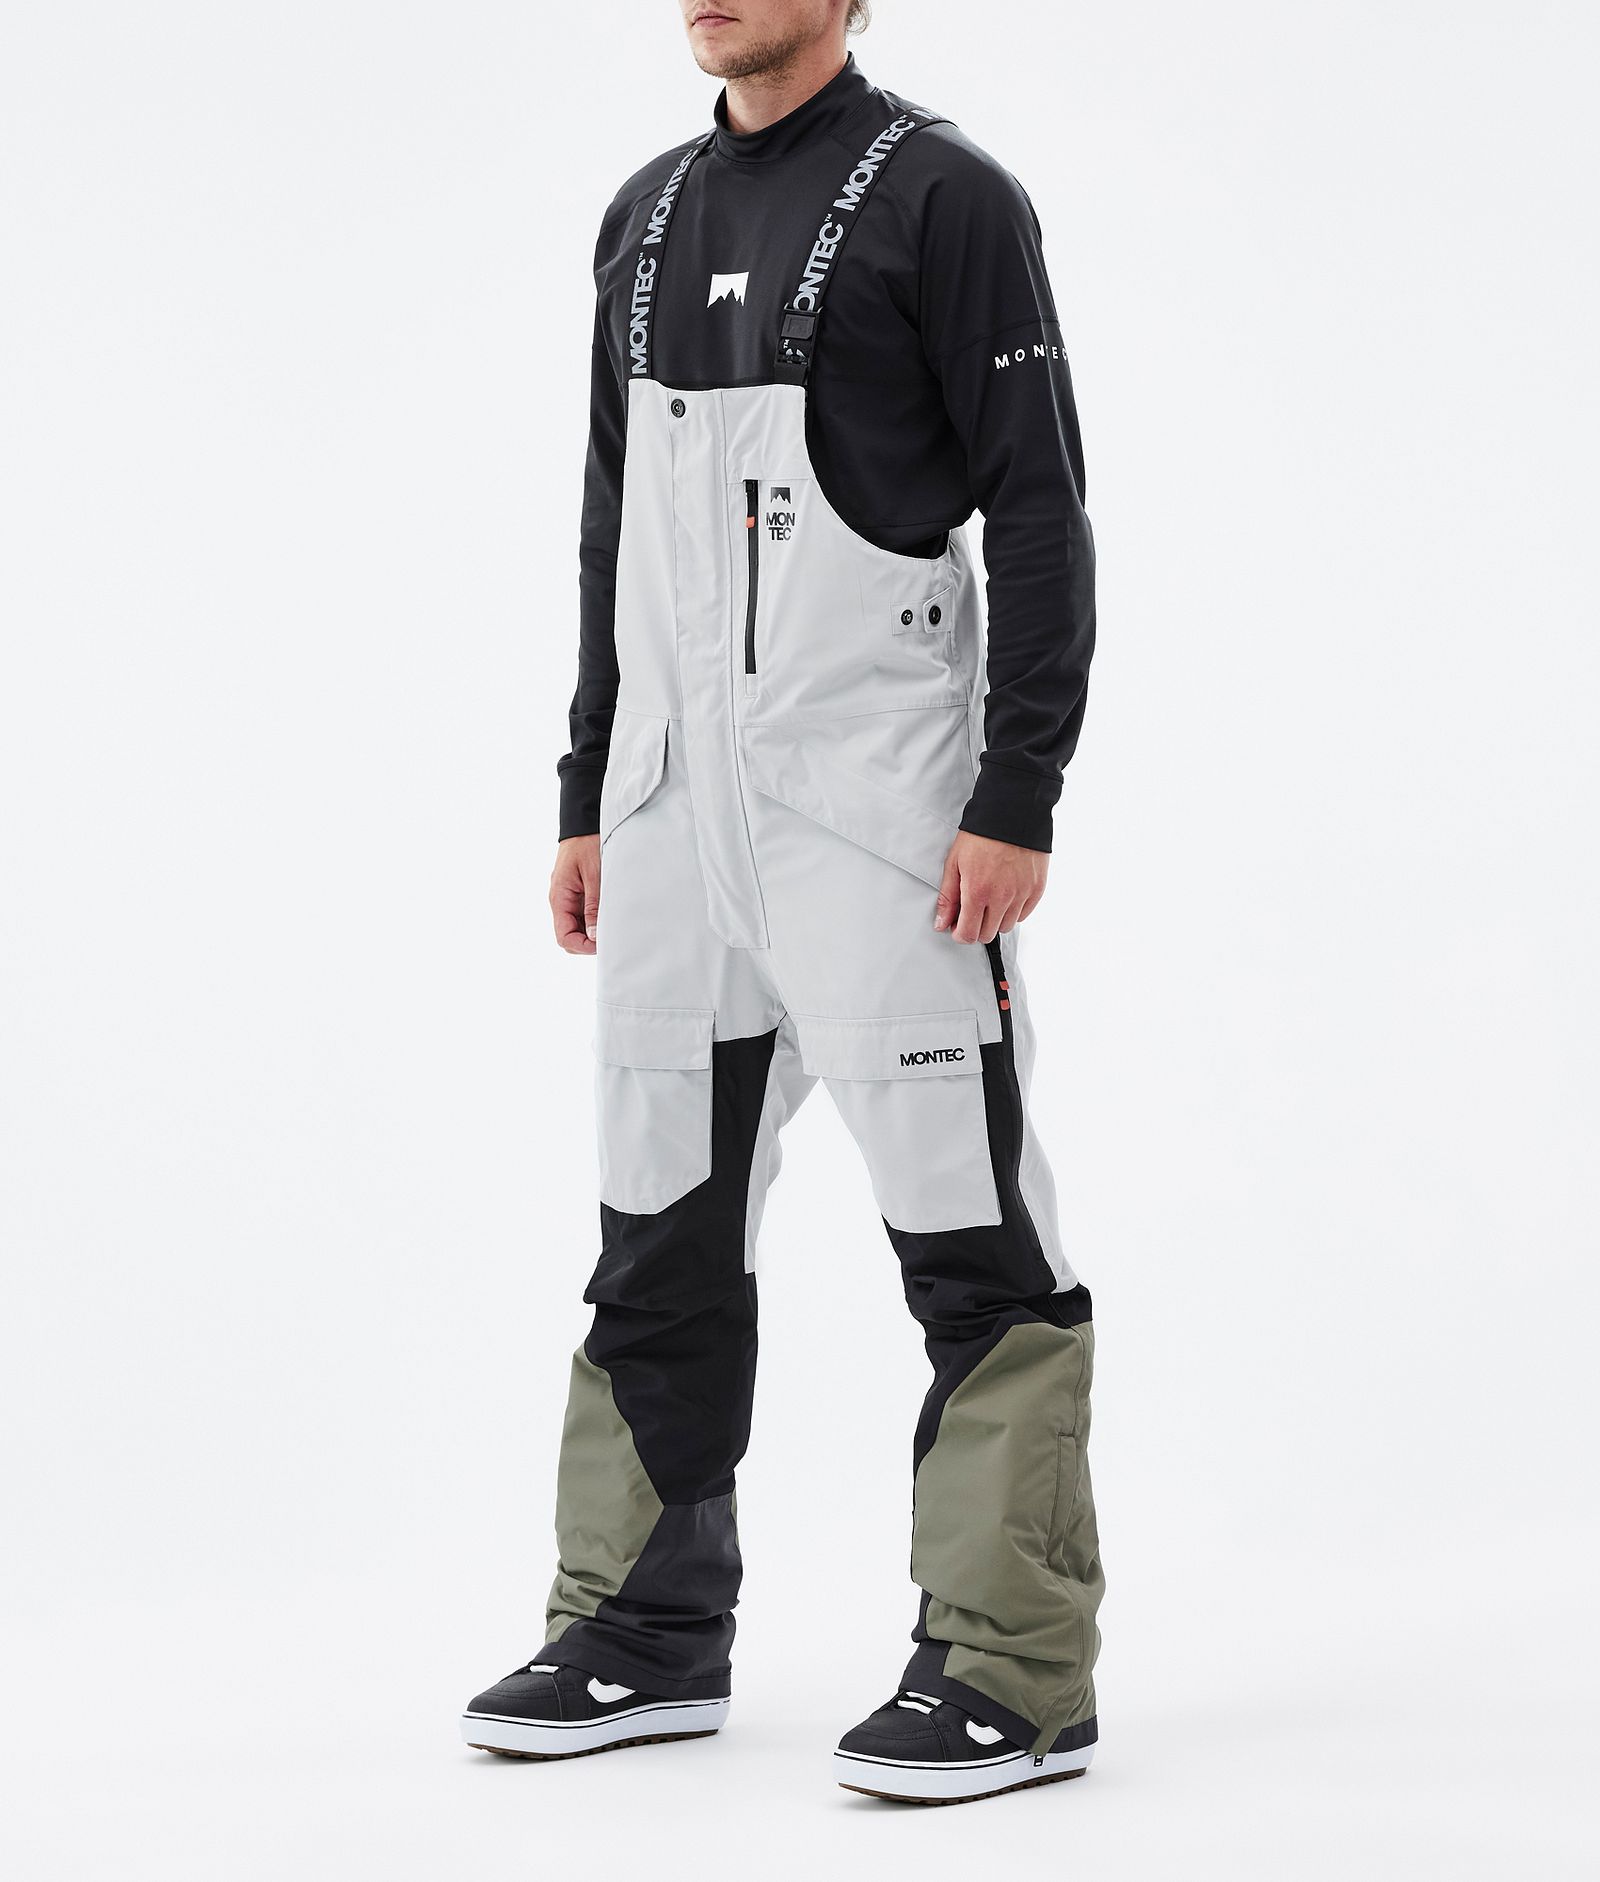 Fawk Kalhoty na Snowboard Pánské Light Grey/Black/Greenish